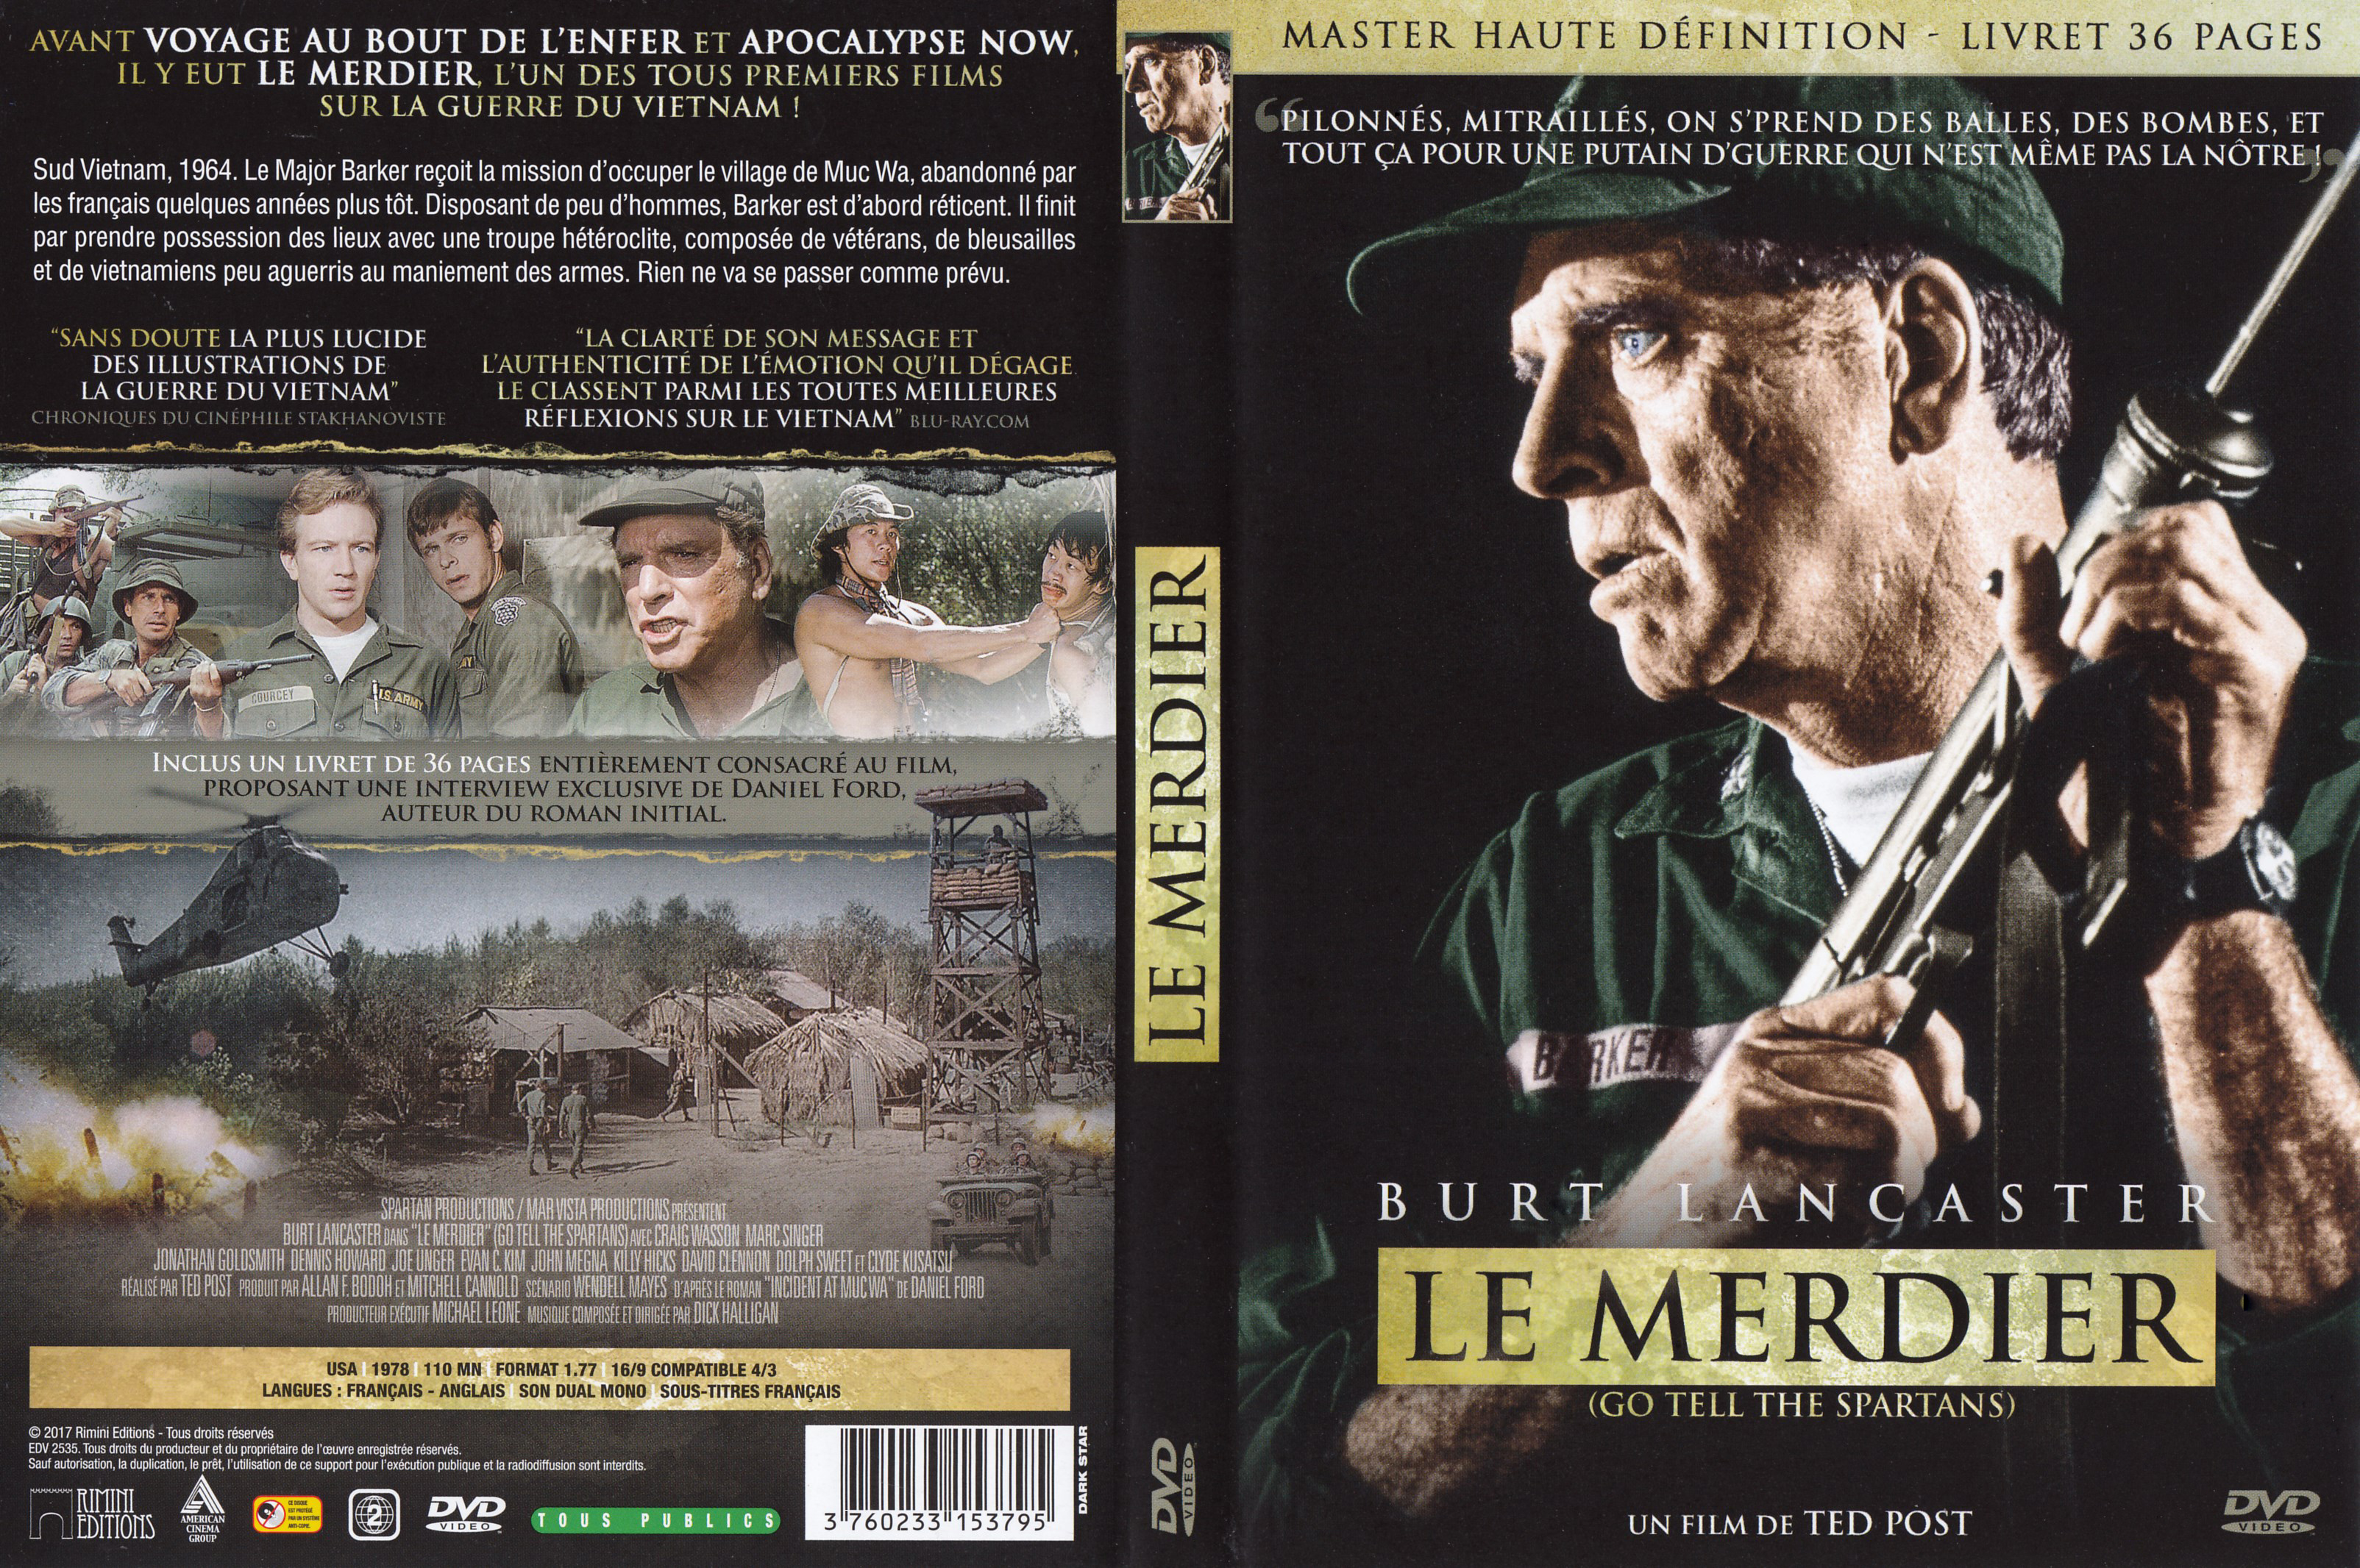 Jaquette DVD Le Merdier v2